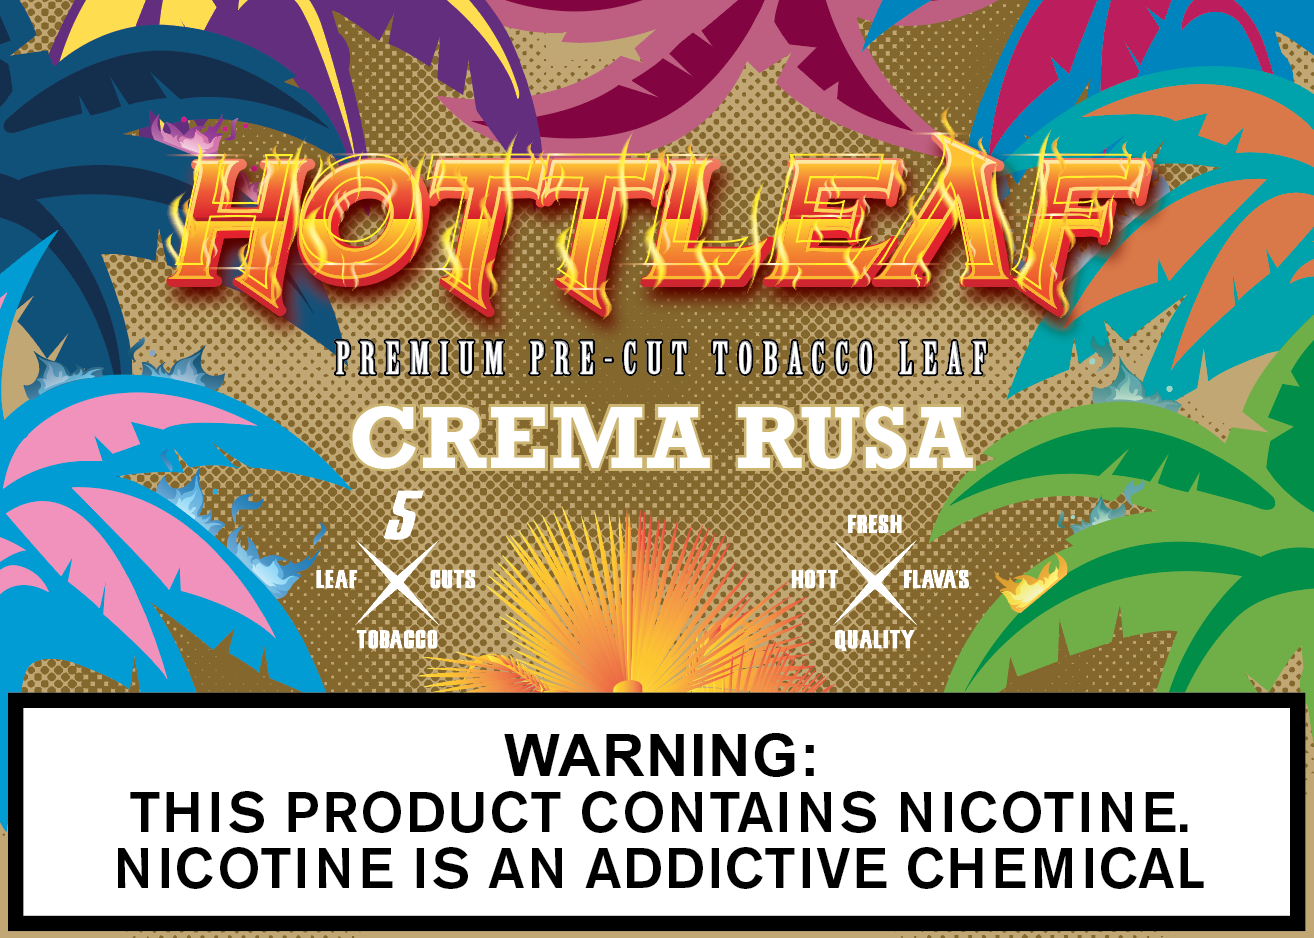 Hottleaf premium cut crema rusa tobacco leaf 8/5pk